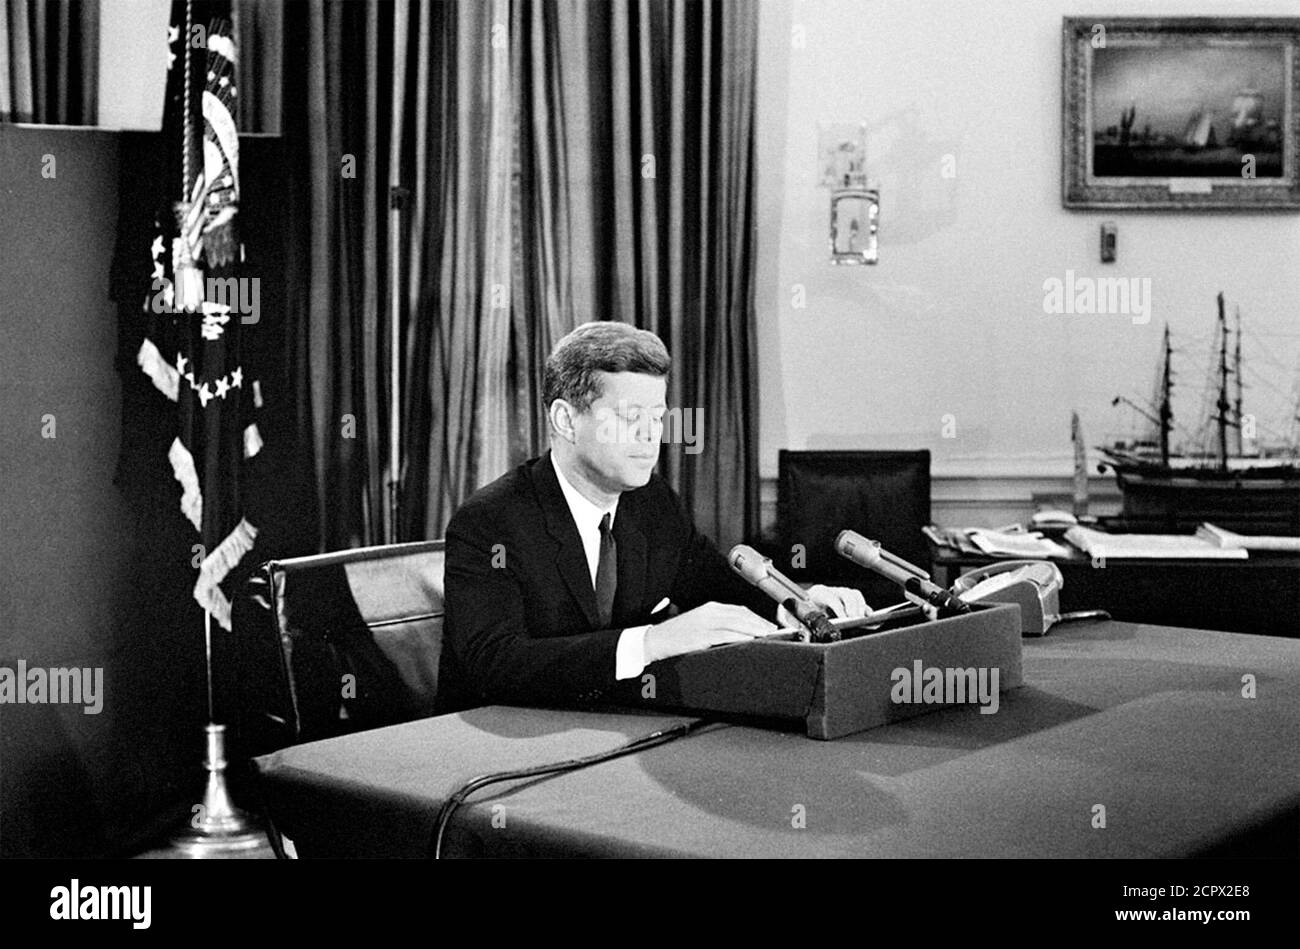 Crisis de los misiles cubanos. El Presidente John F Kennedy se dirige a la nación desde la Oficina Oval el 22 de octubre de 1962 con respecto a la amenaza de los misiles soviéticos en Cuba. Foto de stock